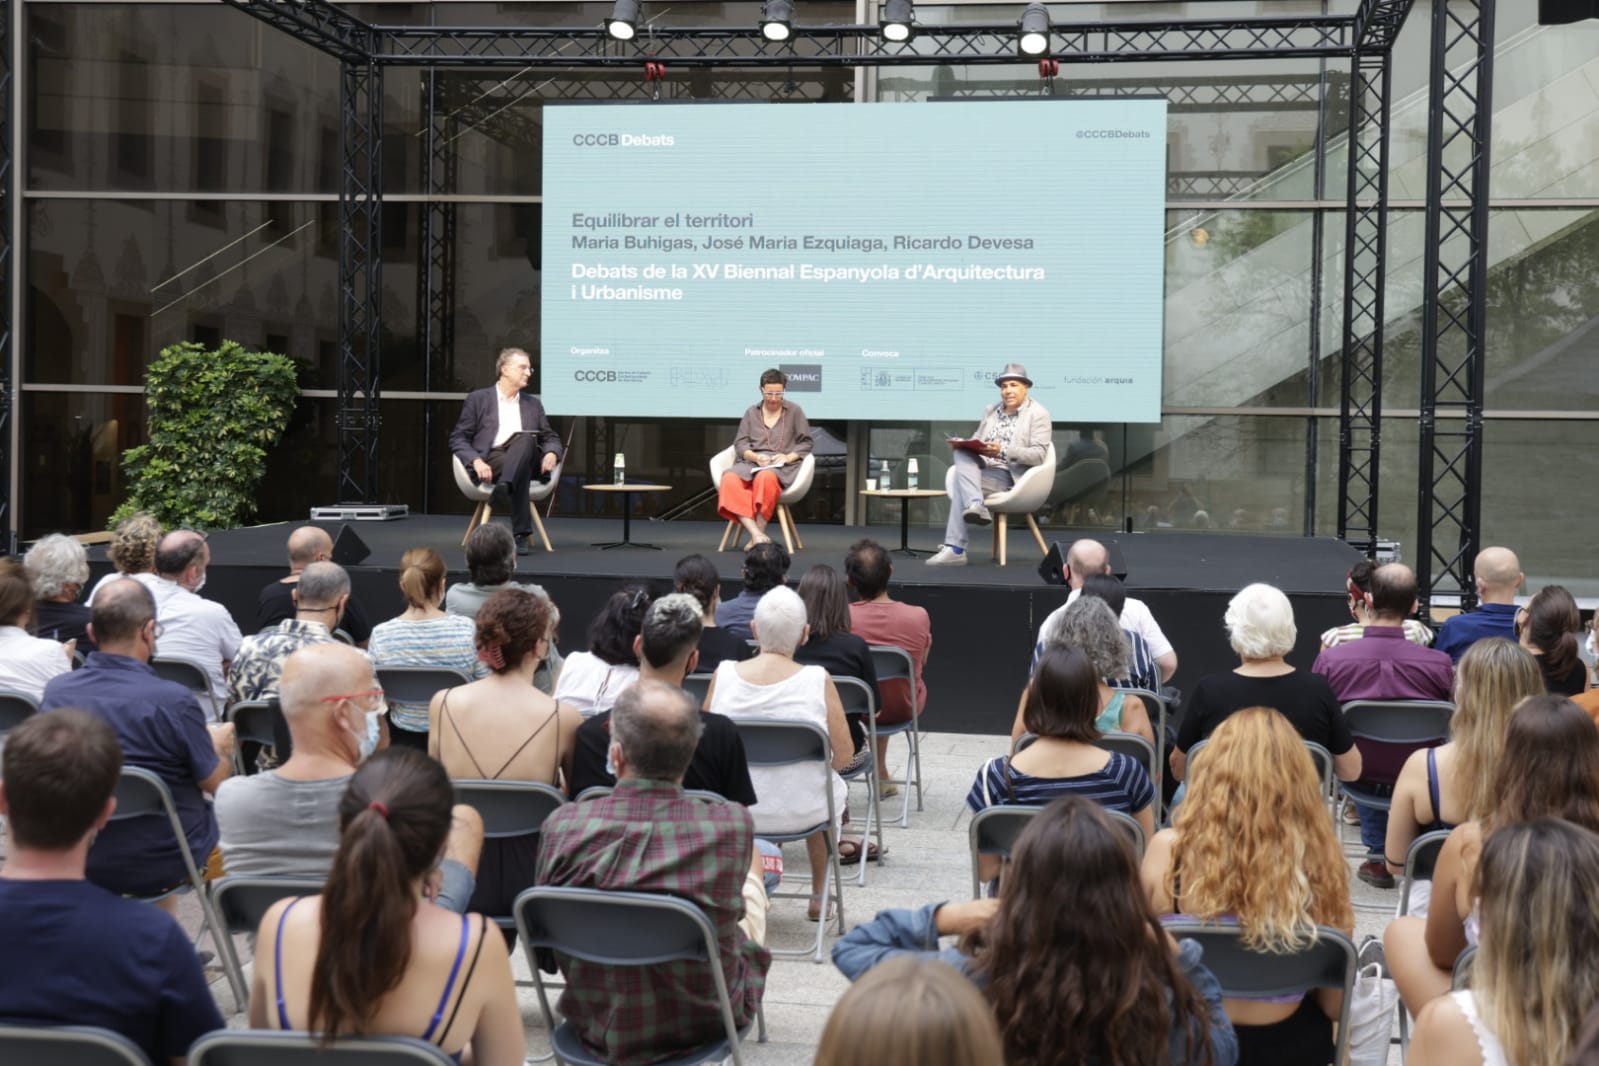 2º debate. Equilibrar el territorio | XV Bienal Española de Arquitectura y Urbanismo